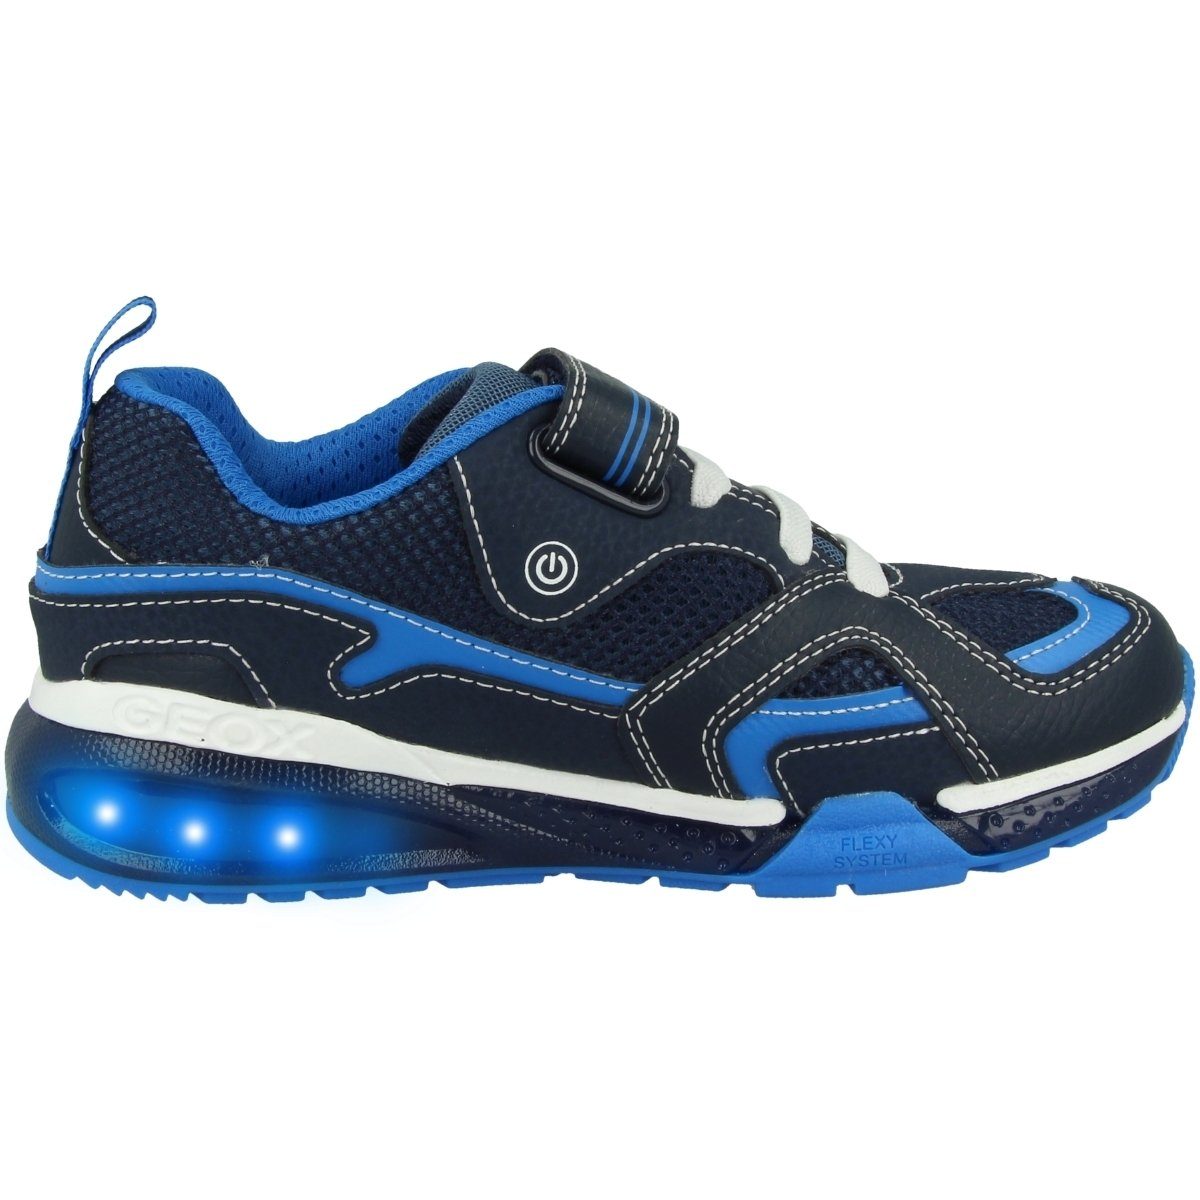 Kinder Unisex J LED Funktion B. Geox Sneaker A Bayonyc blau